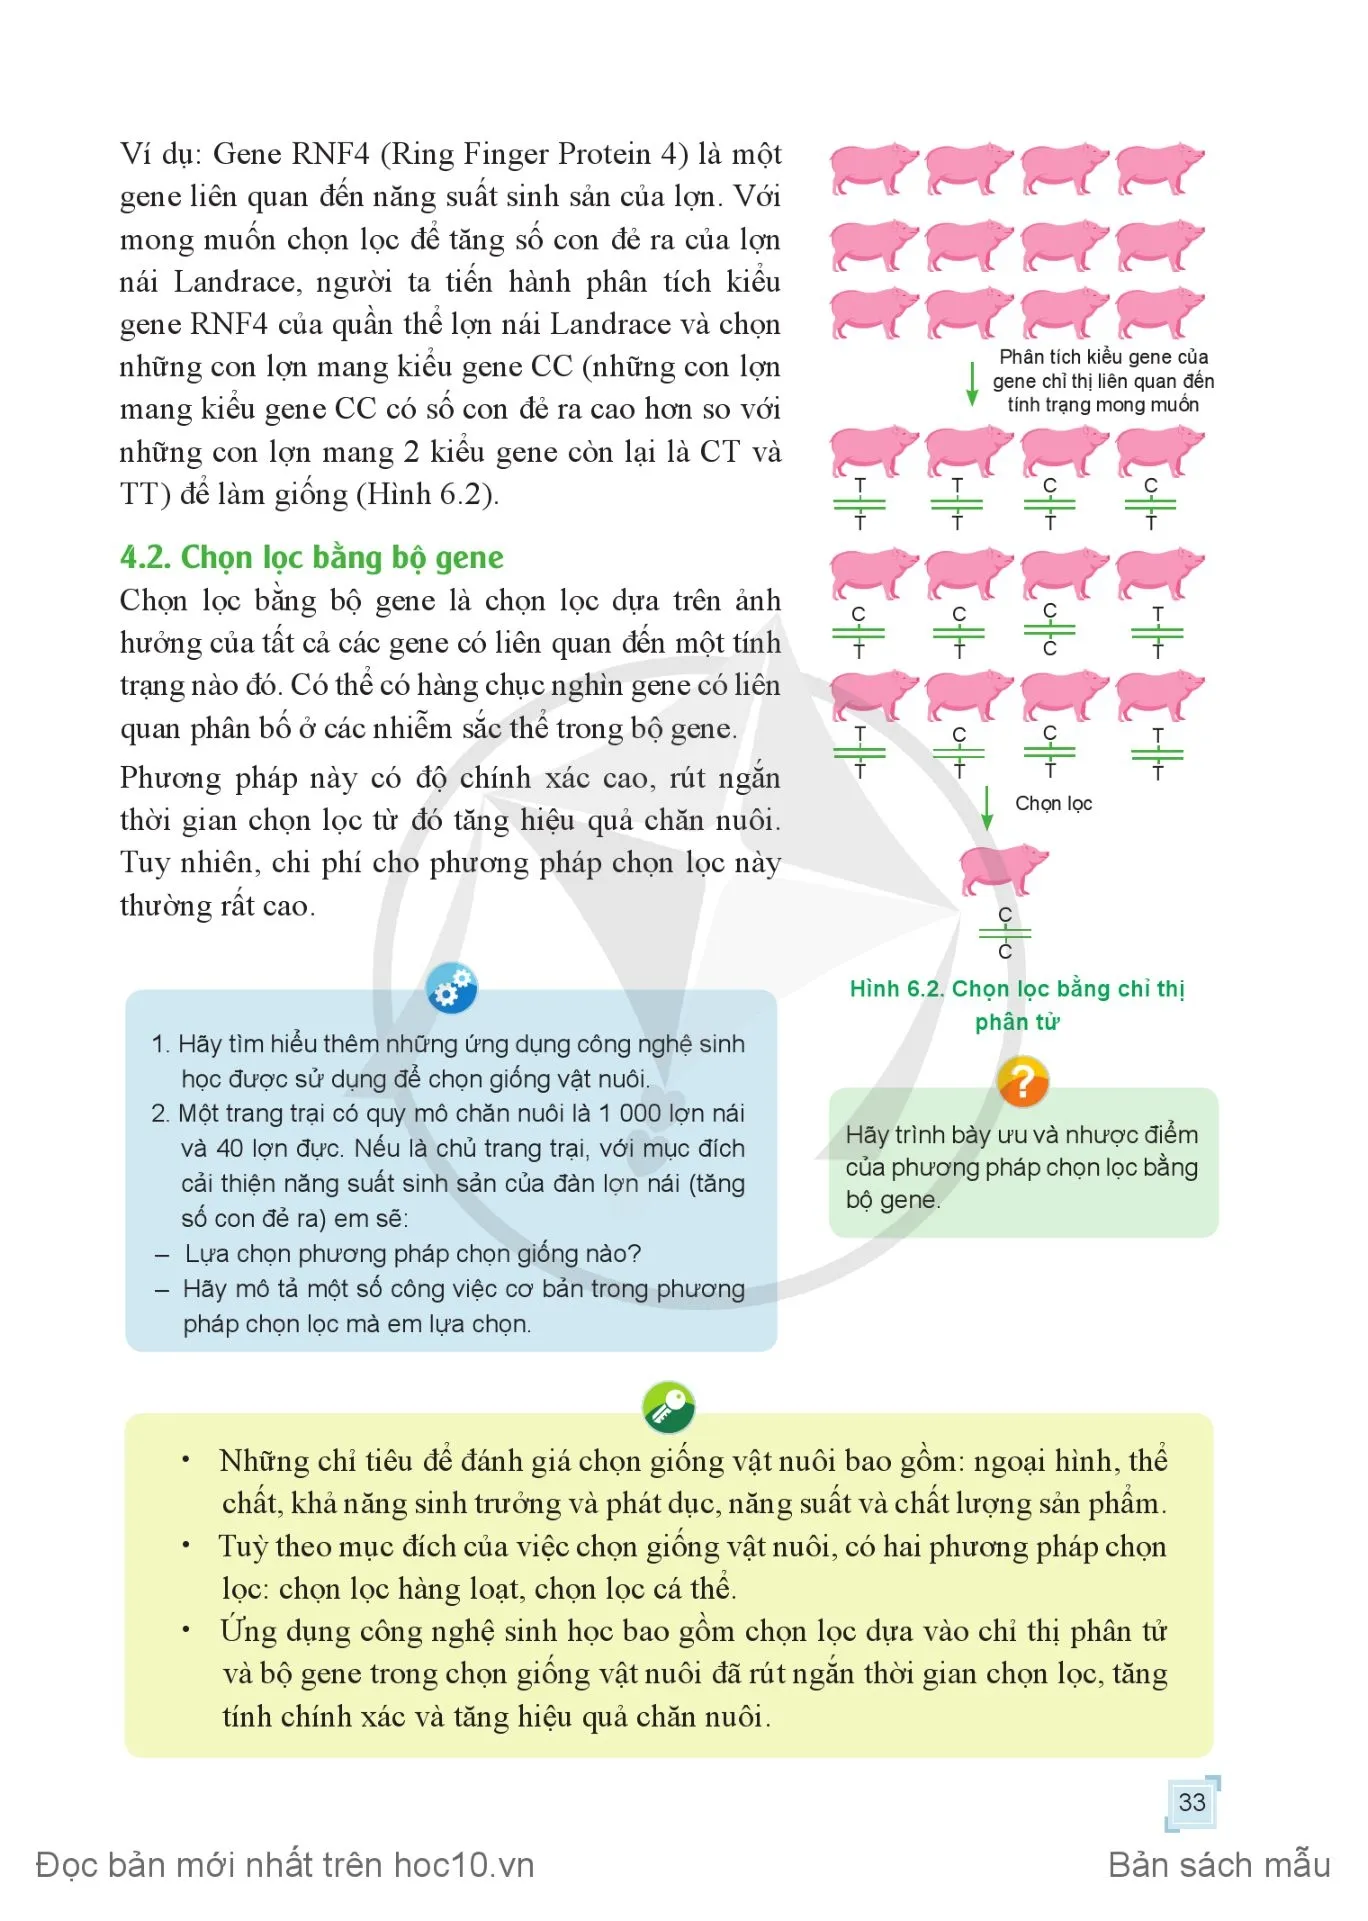 Bài 6. Chọn giống vật nuôi